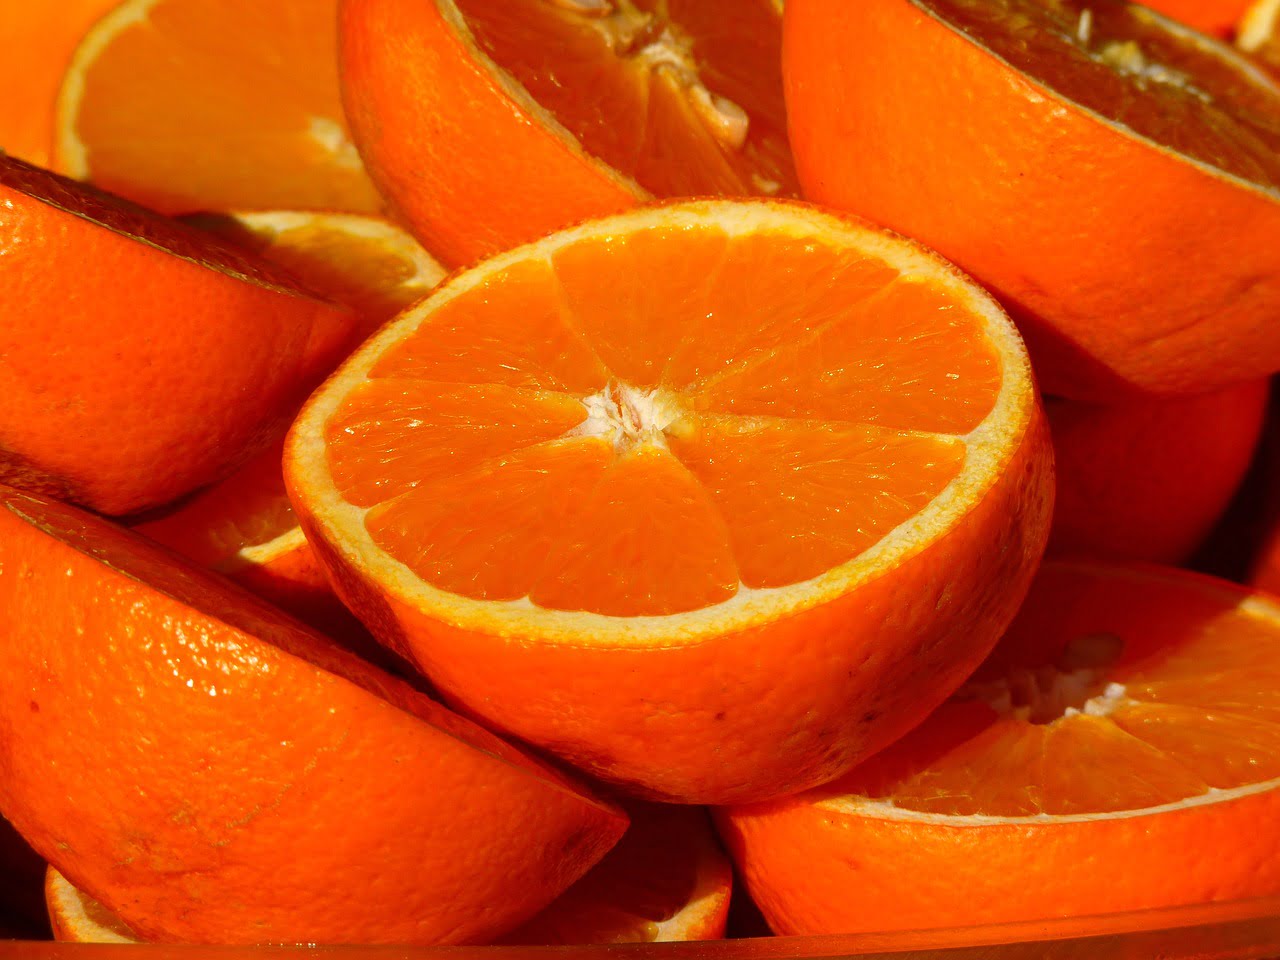 oranges 15046 1280